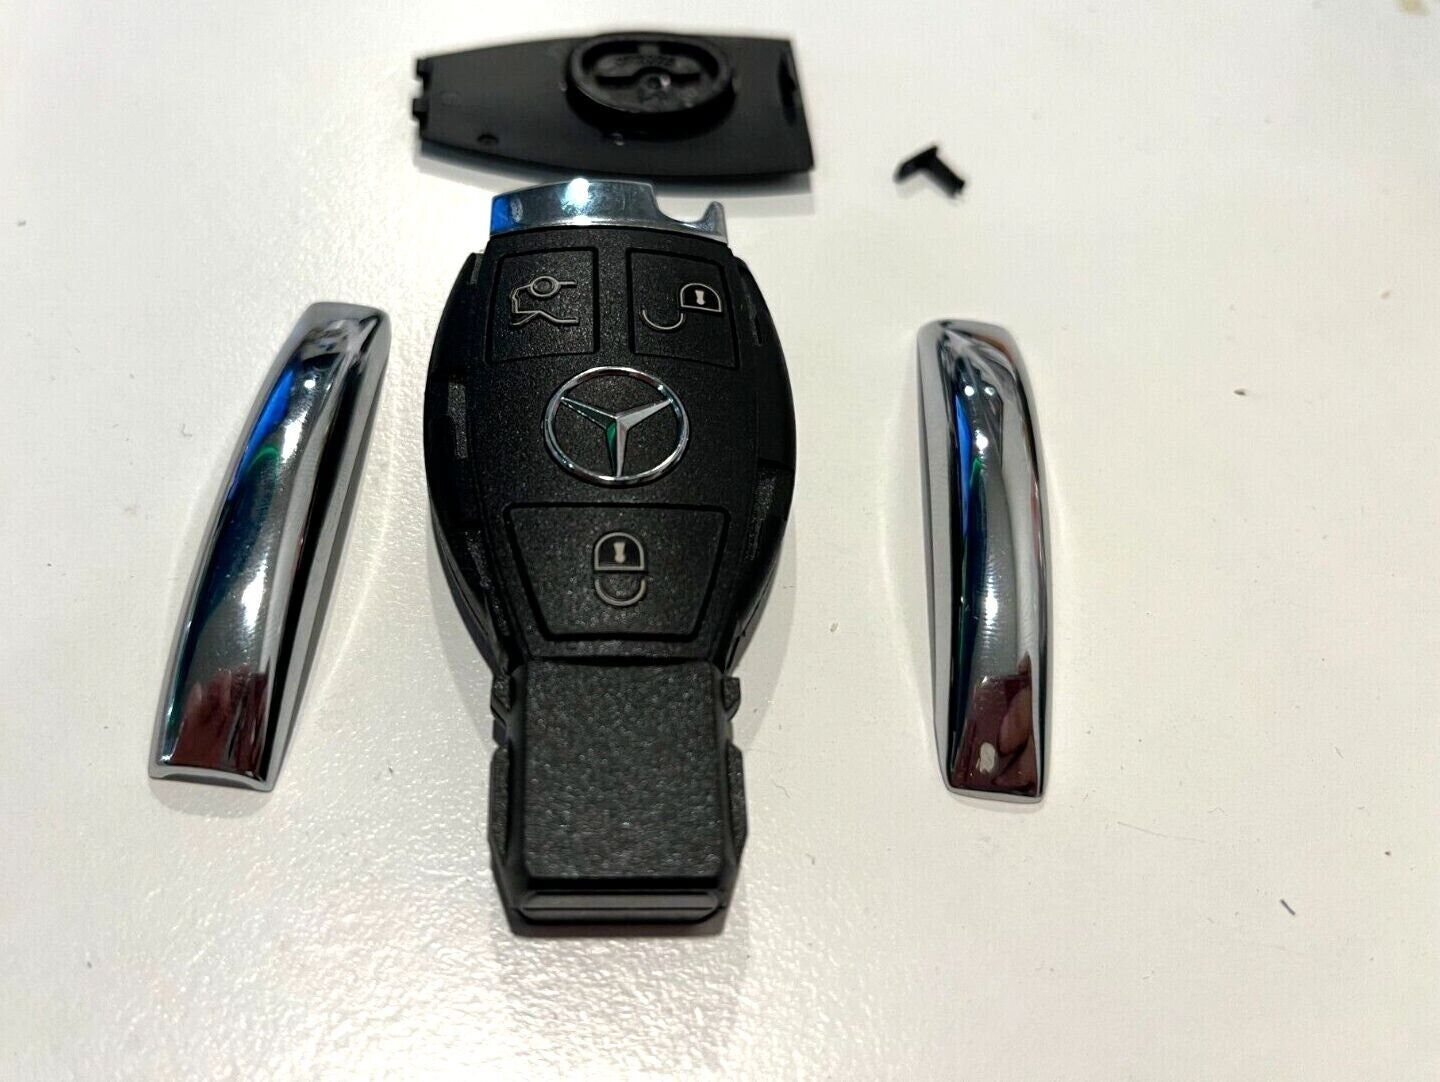 Glossy Silikon Schutzhülle passend für Mercedes-Benz Schlüssel SEK8-M,  11,95 €